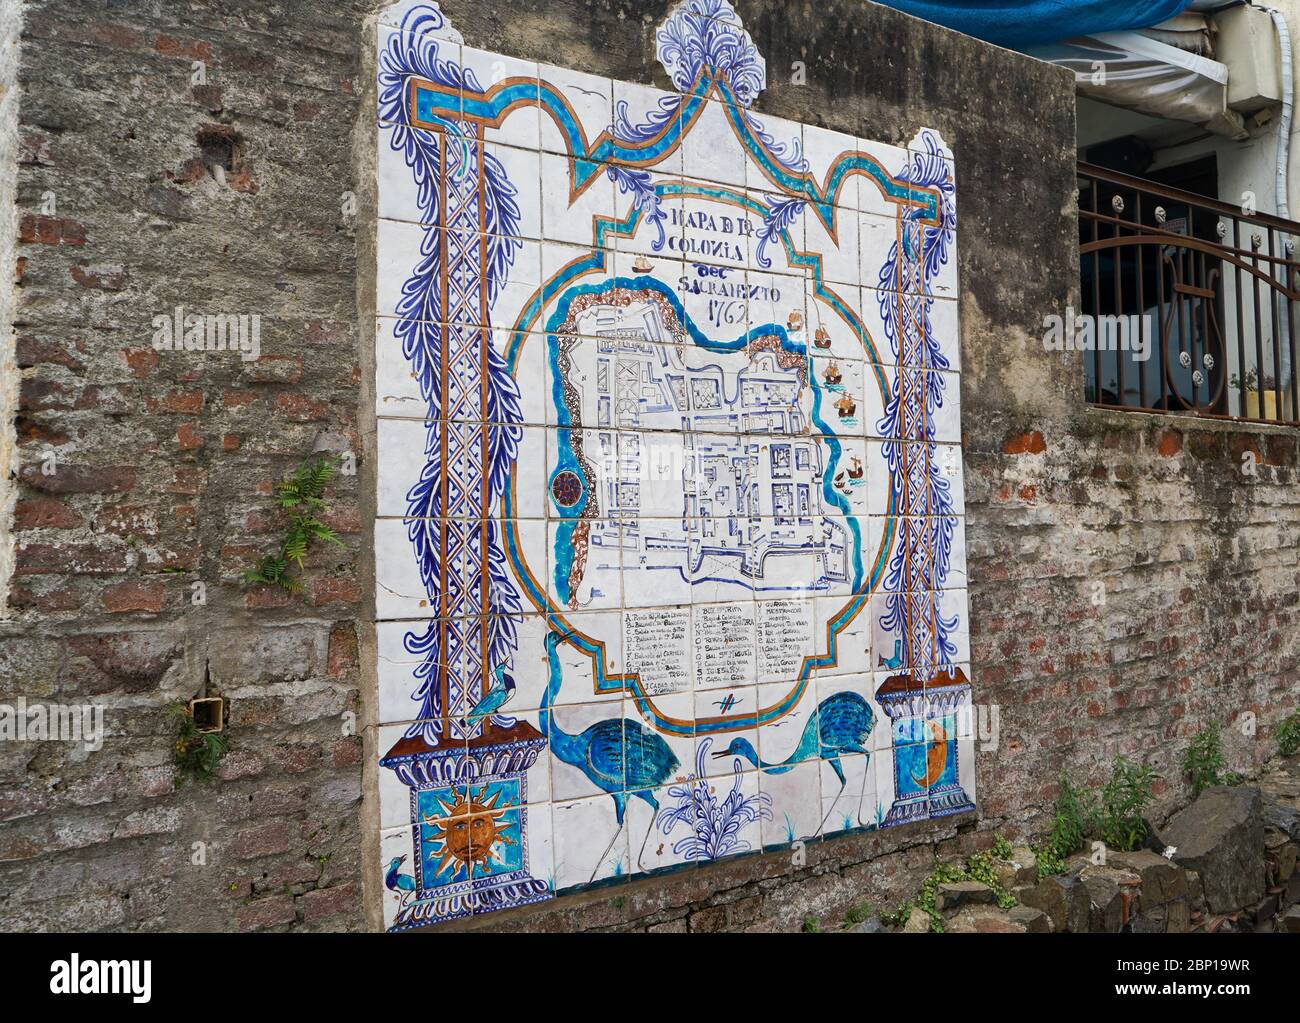 Carte de la Colonia del Sacramento sur l'ancien mur, Uruguay. Mars 2020 Banque D'Images